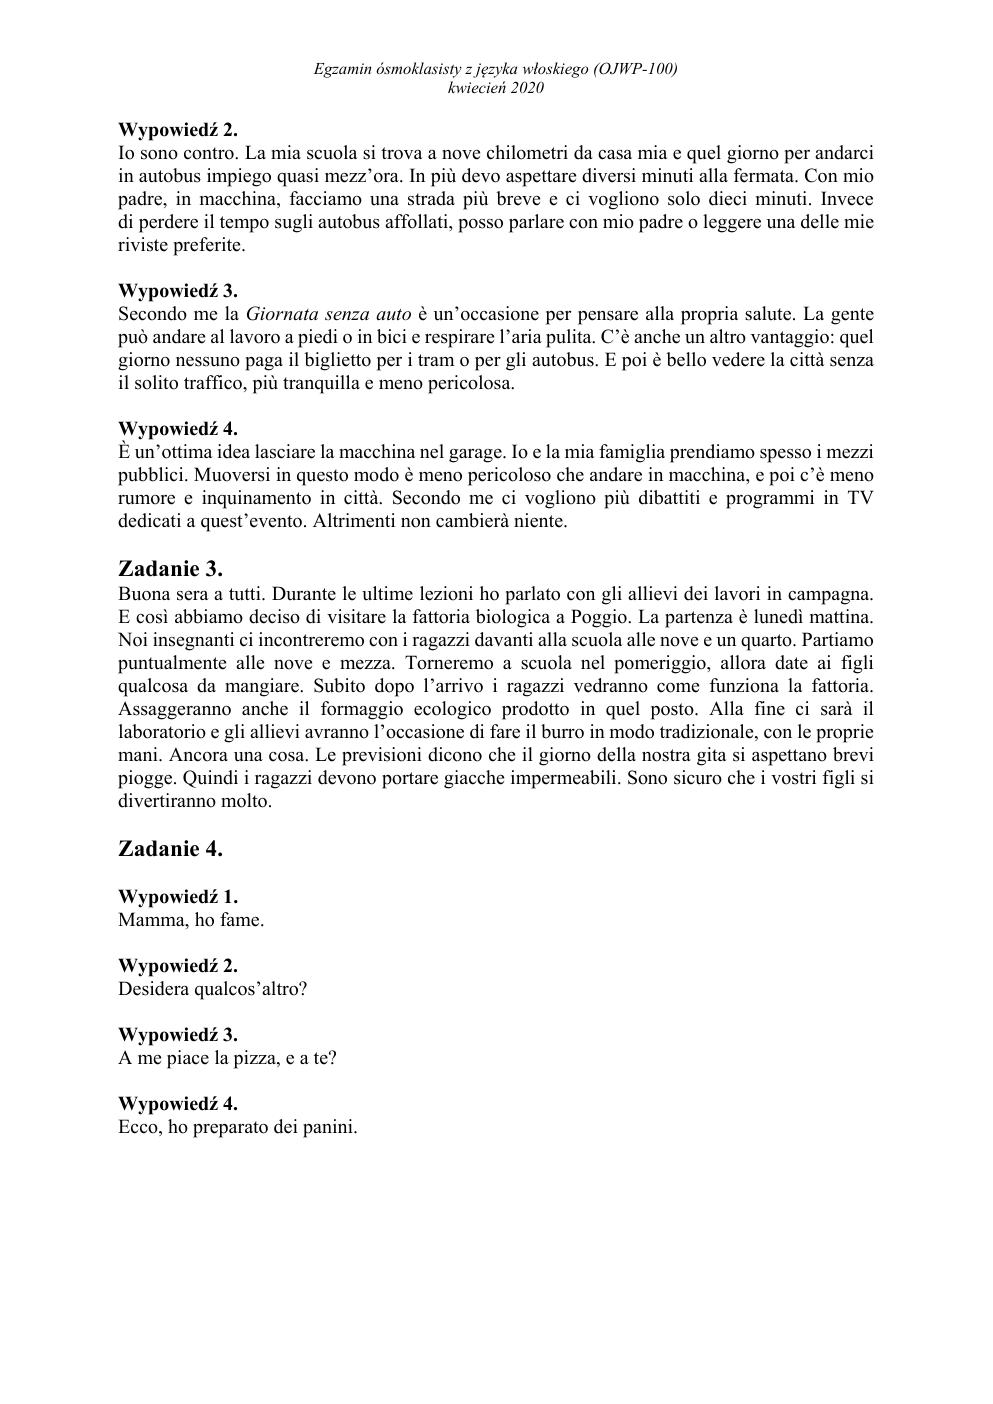 transkrypcja - włoski - egzamin ósmoklasisty 2020-2